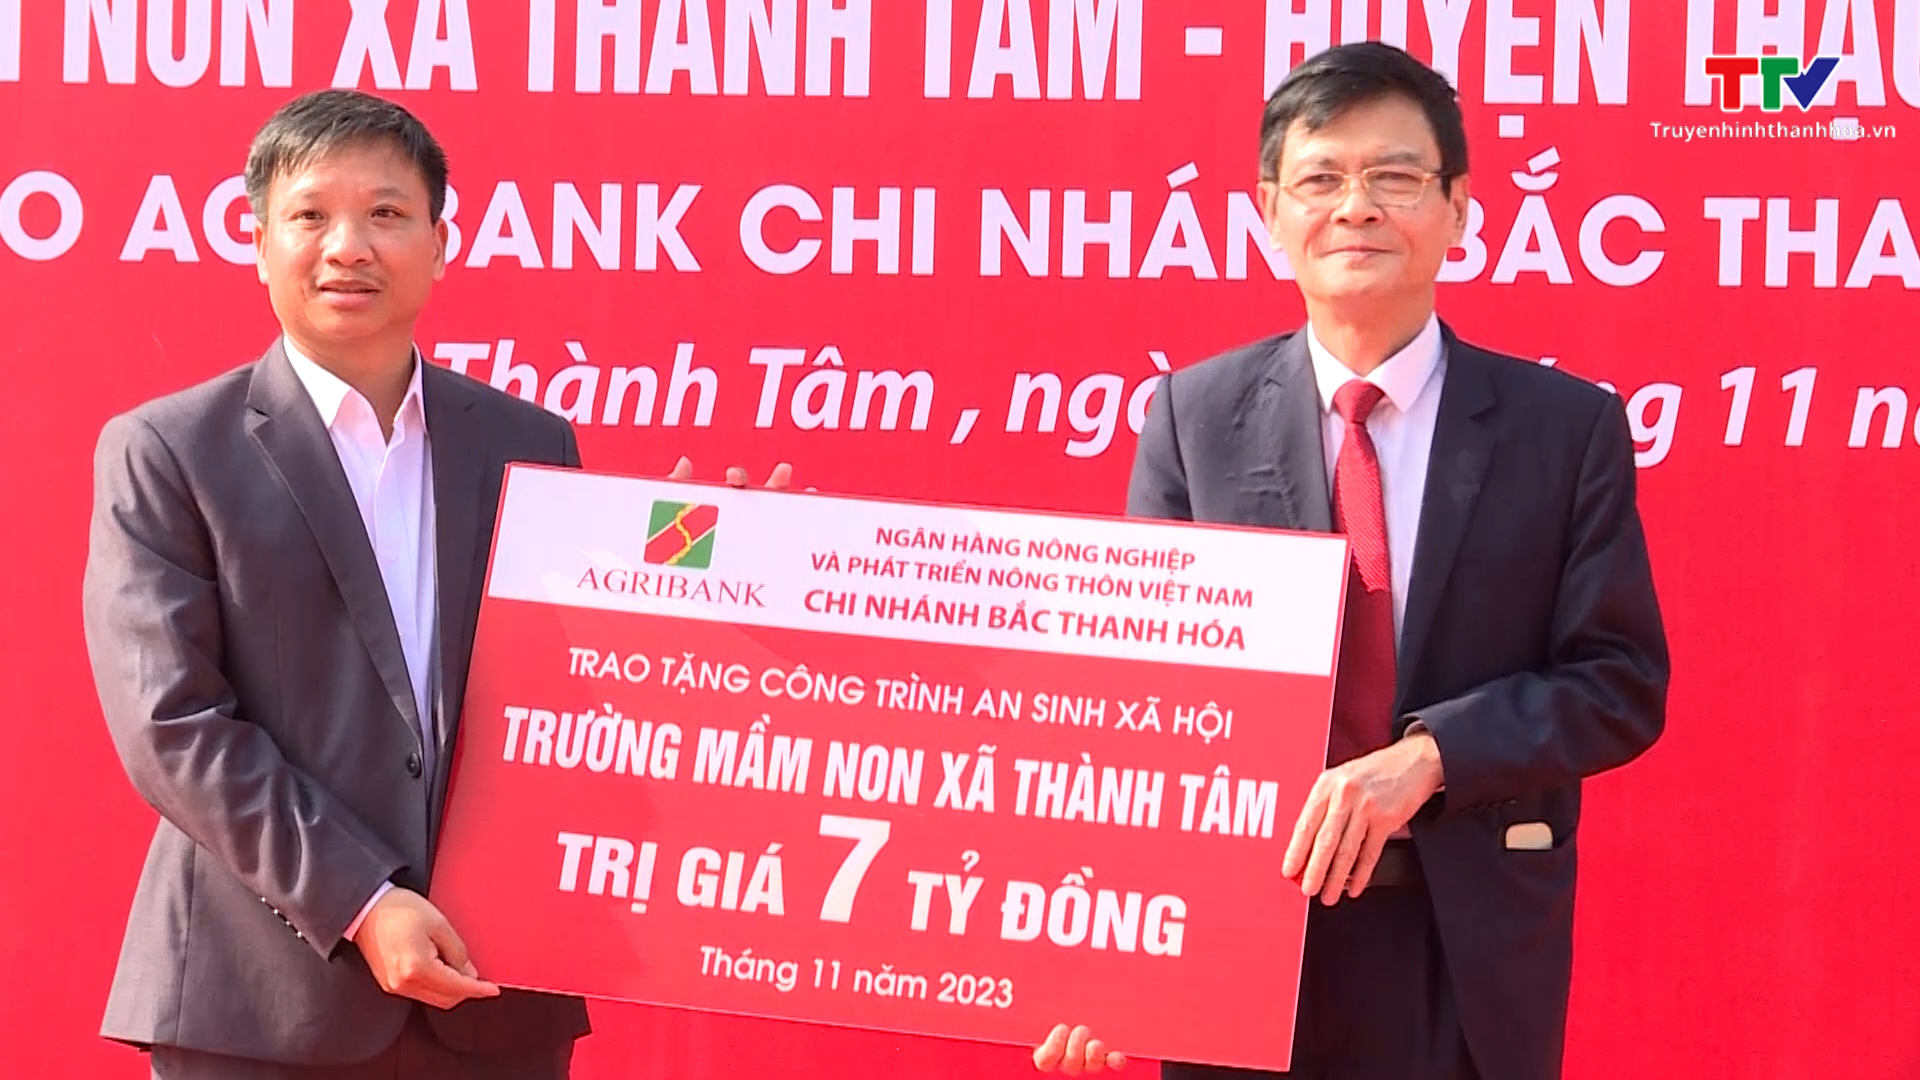 Agribank Bắc Thanh Hoá trao tặng công trình an sinh xã hội Trường Mầm non xã Thành Tâm, huyện Thạch Thành- Ảnh 1.